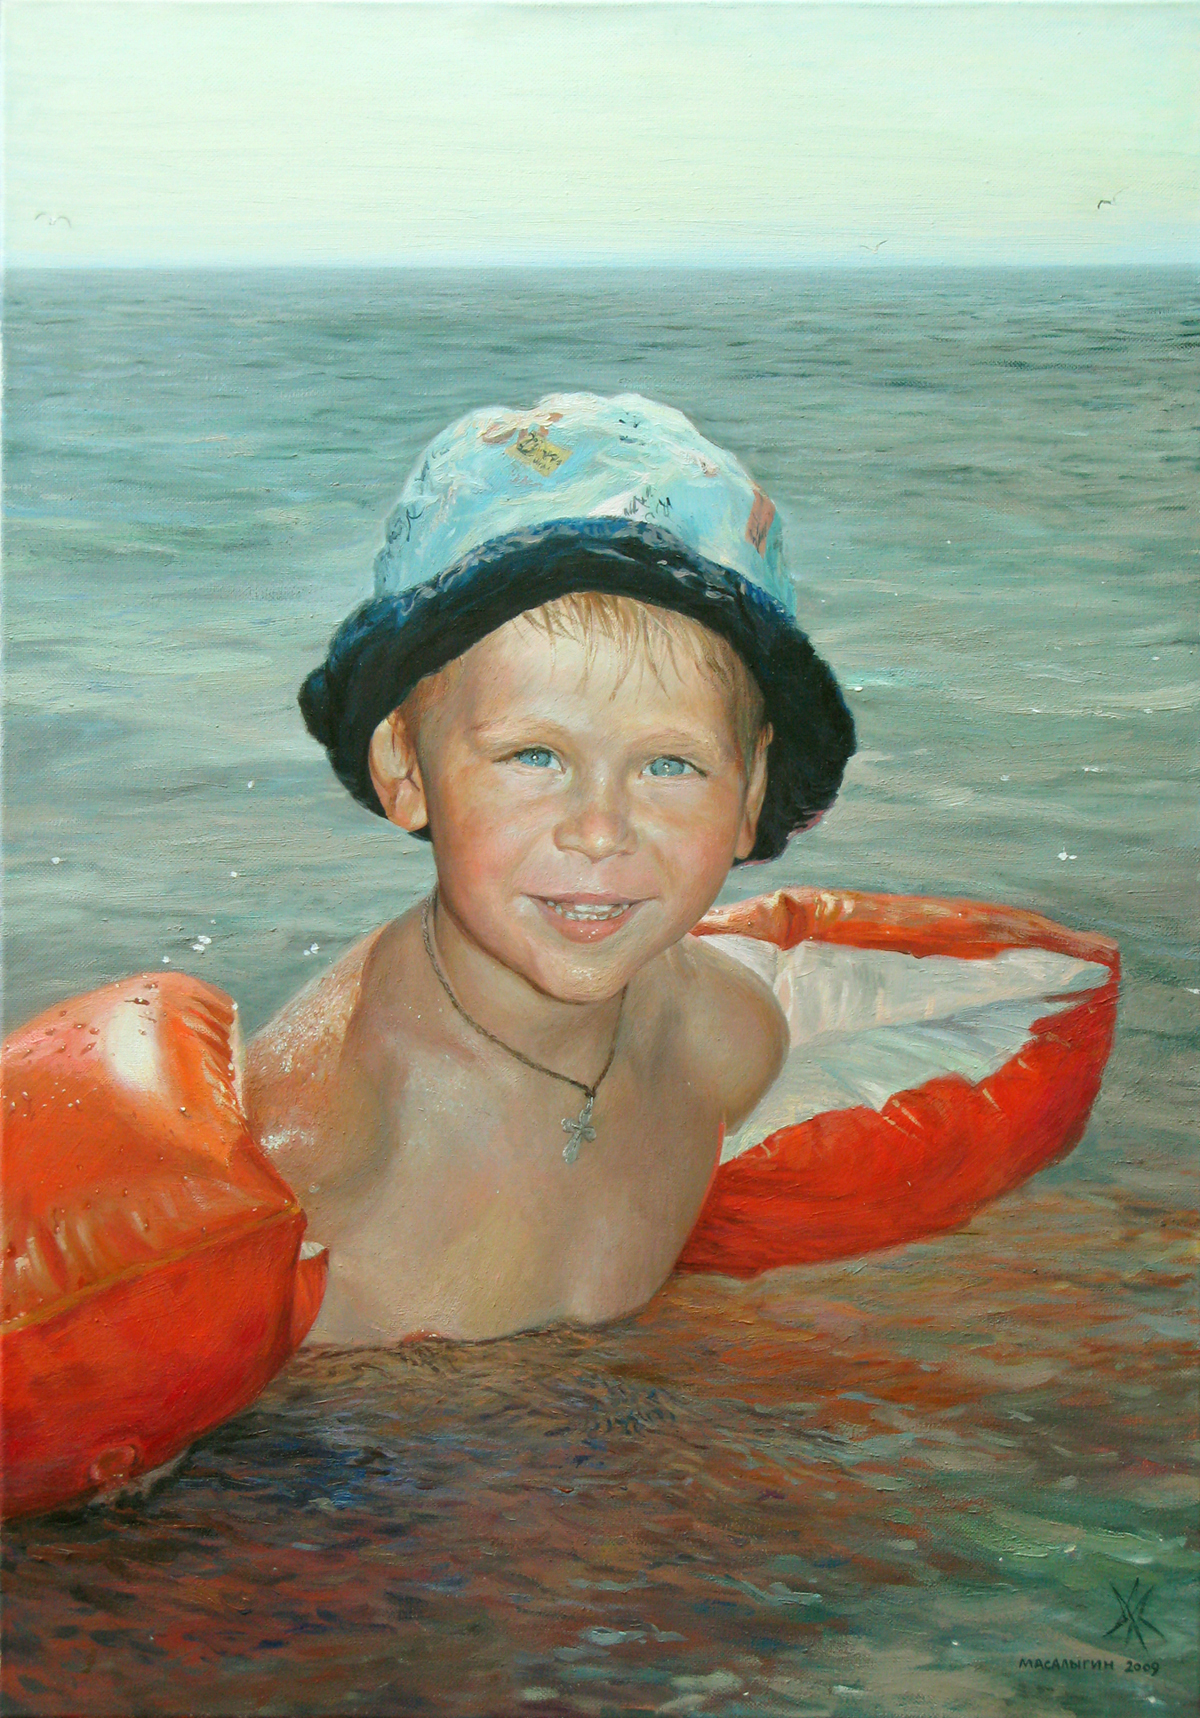 Портрет мальчика на море. 2009 г.